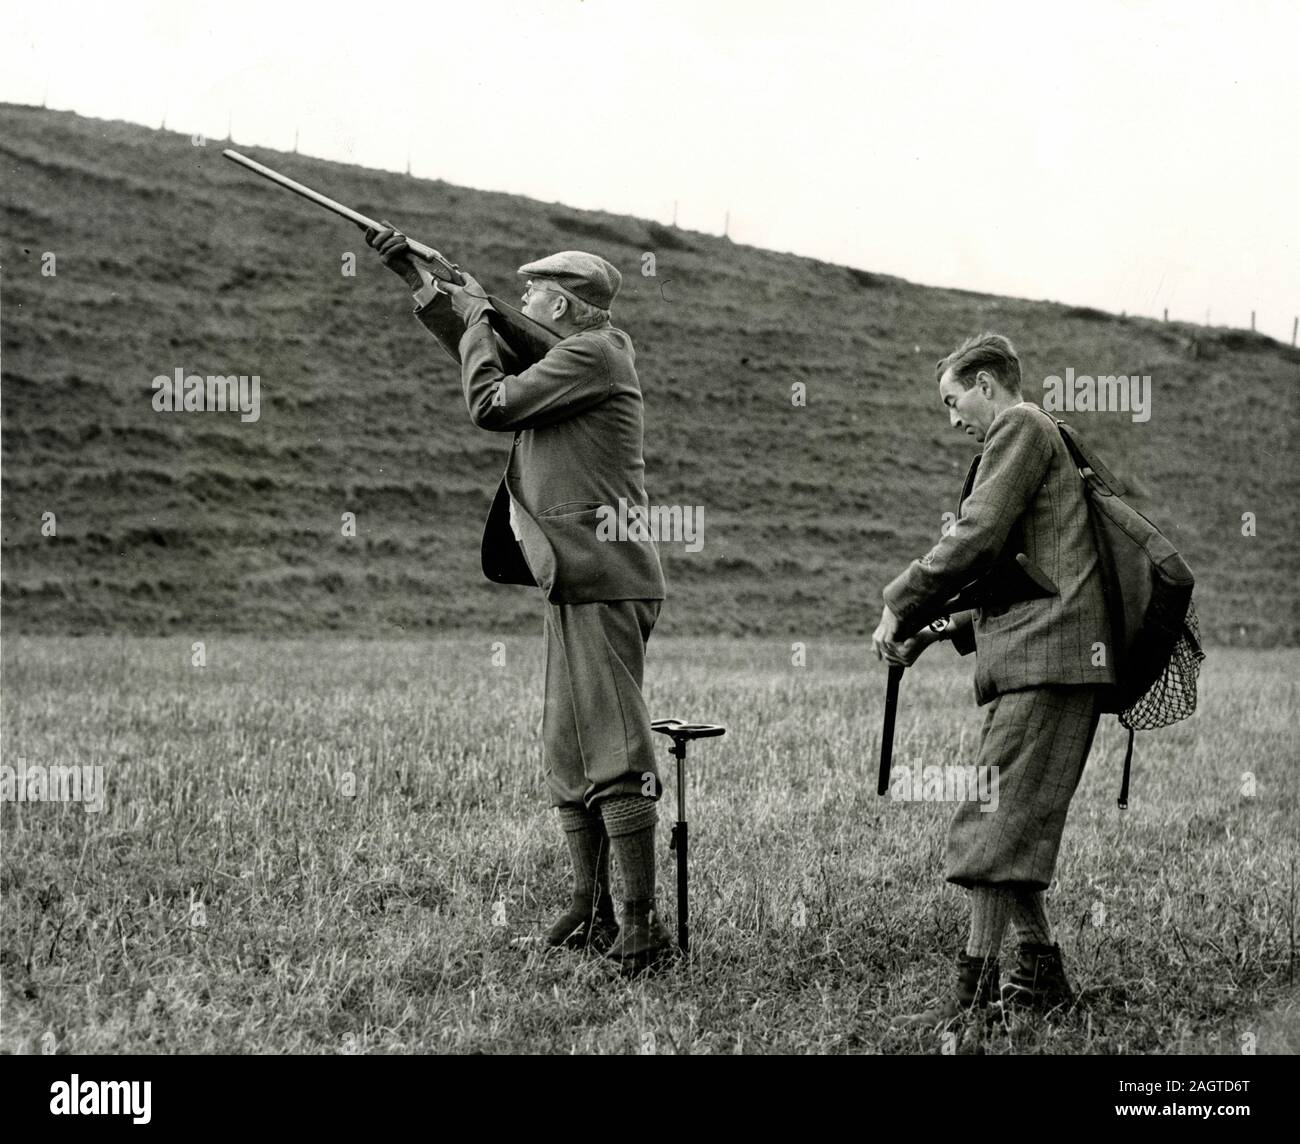 El Primer Ministro británico, Harold Macmillan tiene como objetivo durante sus vacaciones, Castlemains disparo, UK 1960 Foto de stock